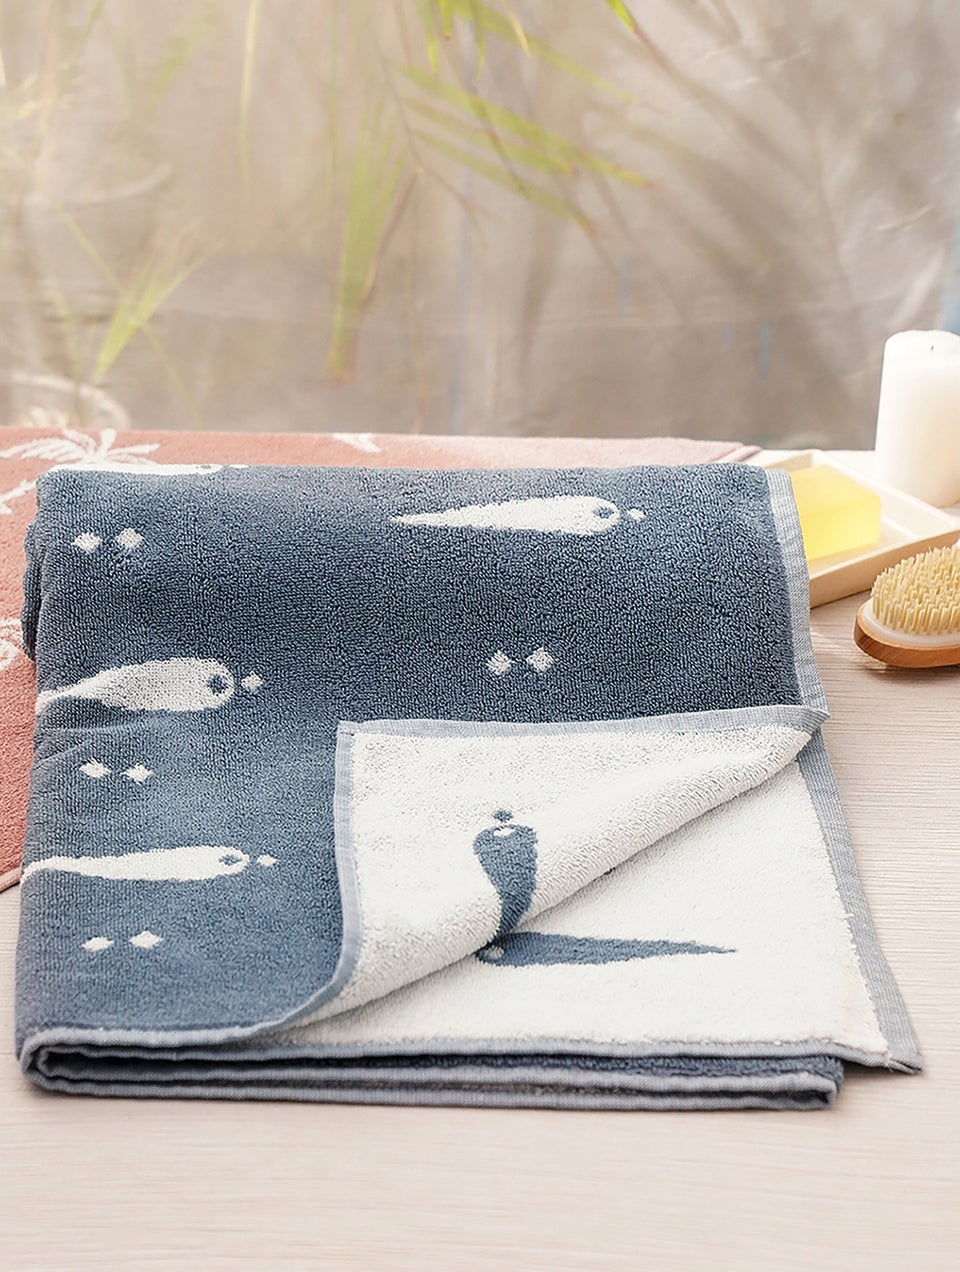 Unisex Blue Jacquard Cotton Bath Towel